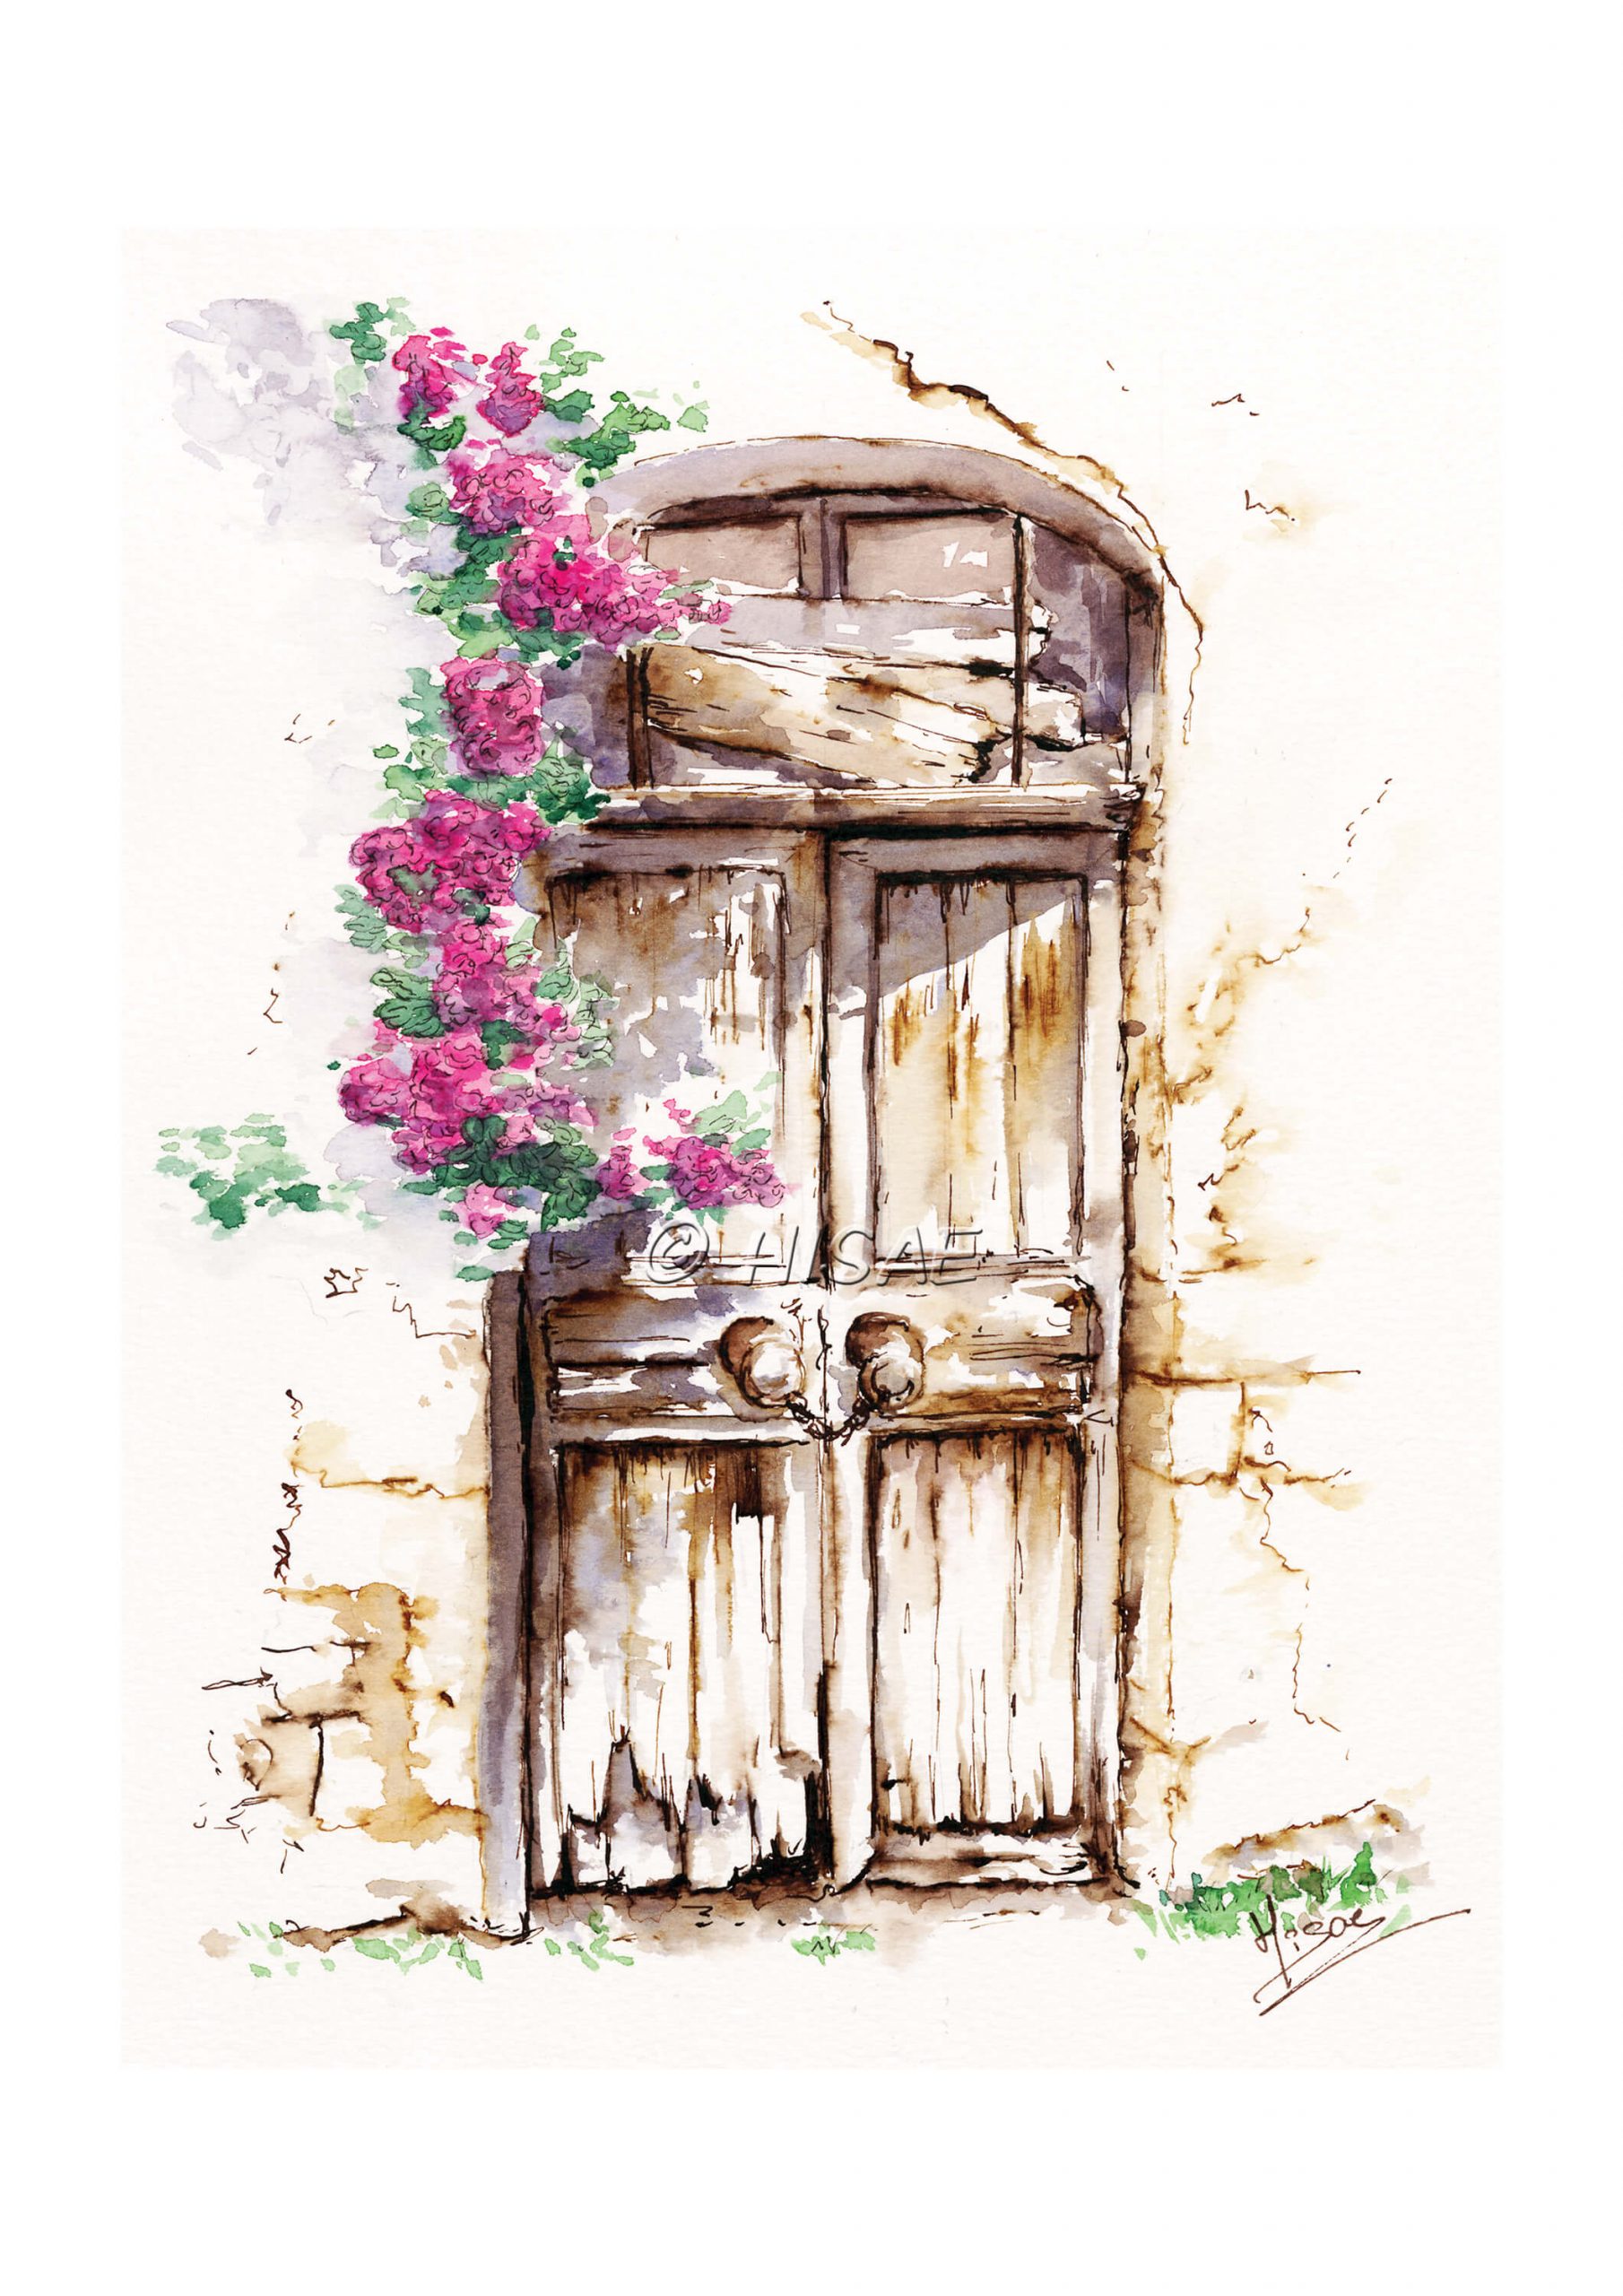 Impression d'un dessin original réalisé à l'encre et à l'aquarelle représentant une porte d'une maison abandonnée à côté de laquelle pend des fleurs grimpantes @Hisae illustrations